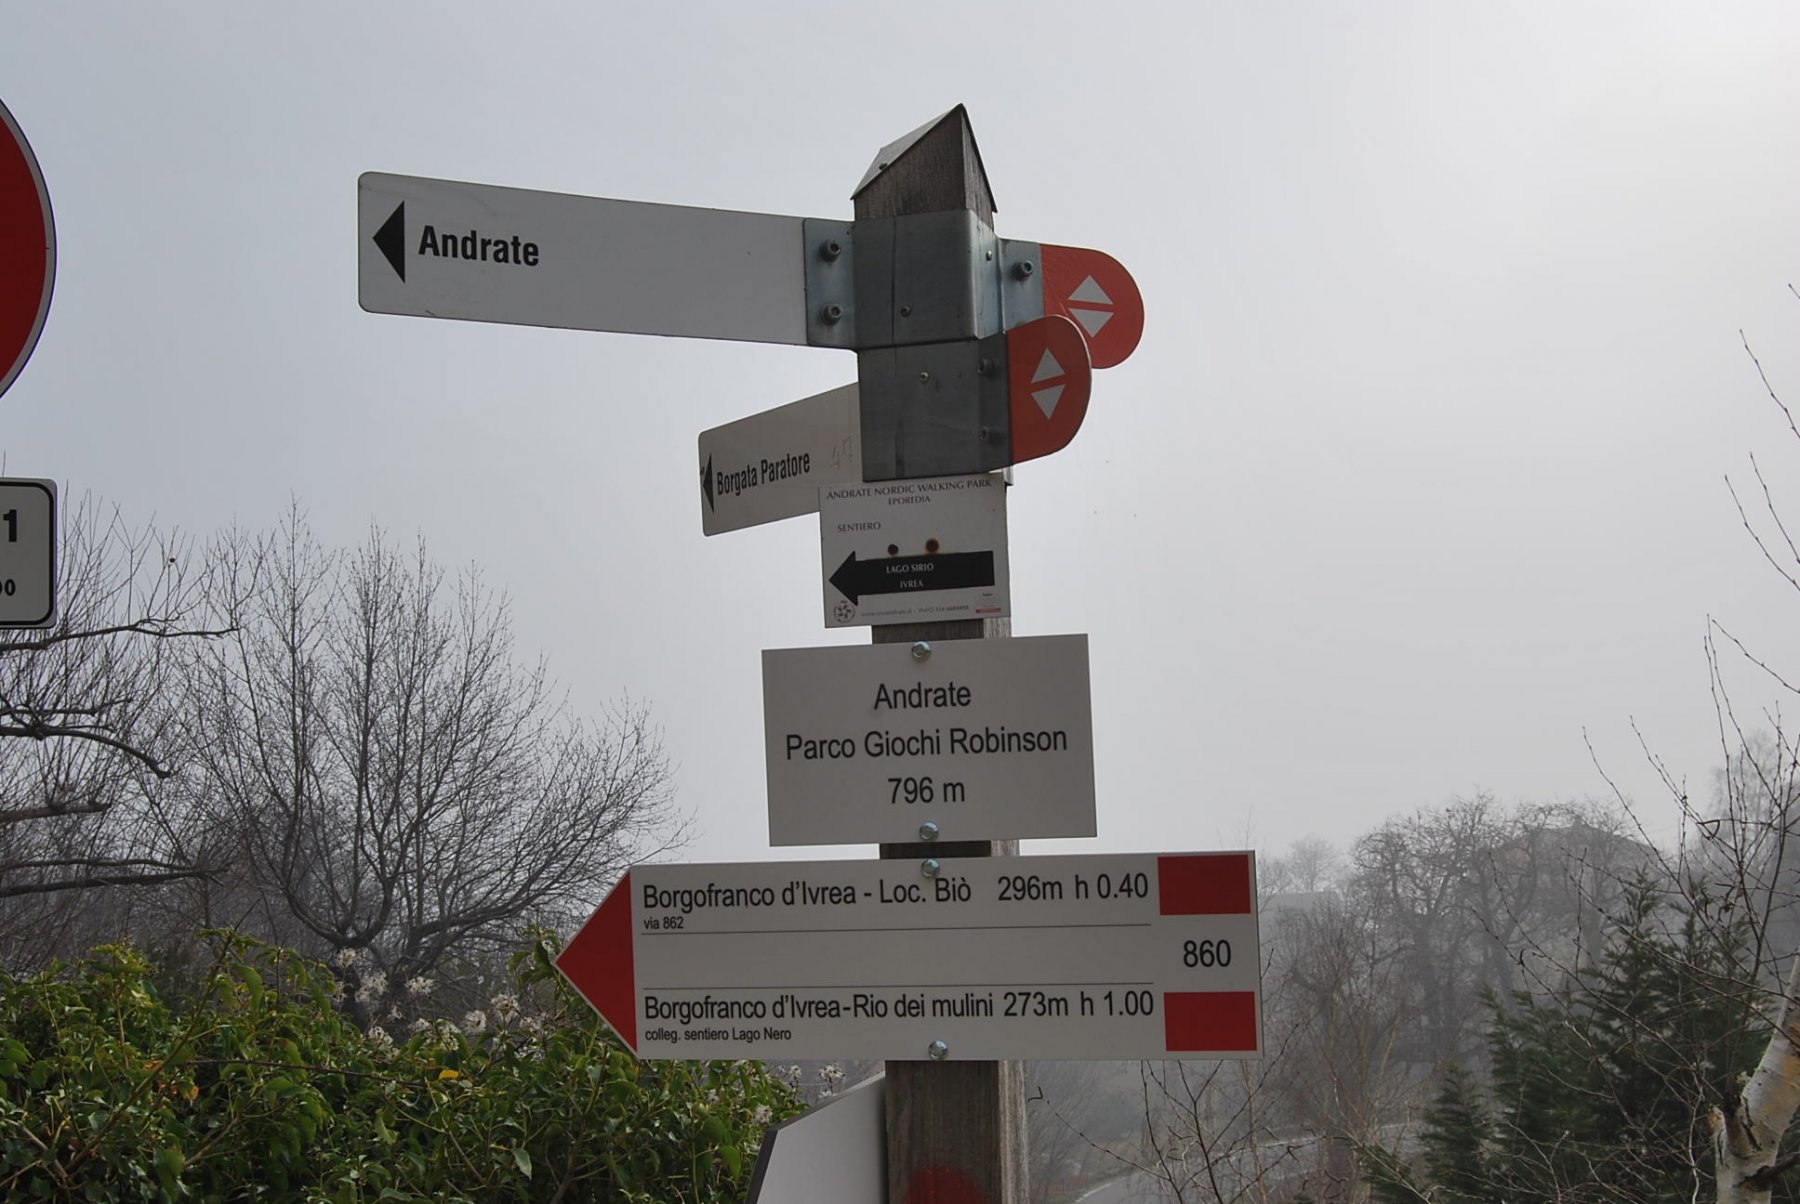 Indicazioni al Parco Robinson ad Andrate per la discesa a Borgofranco